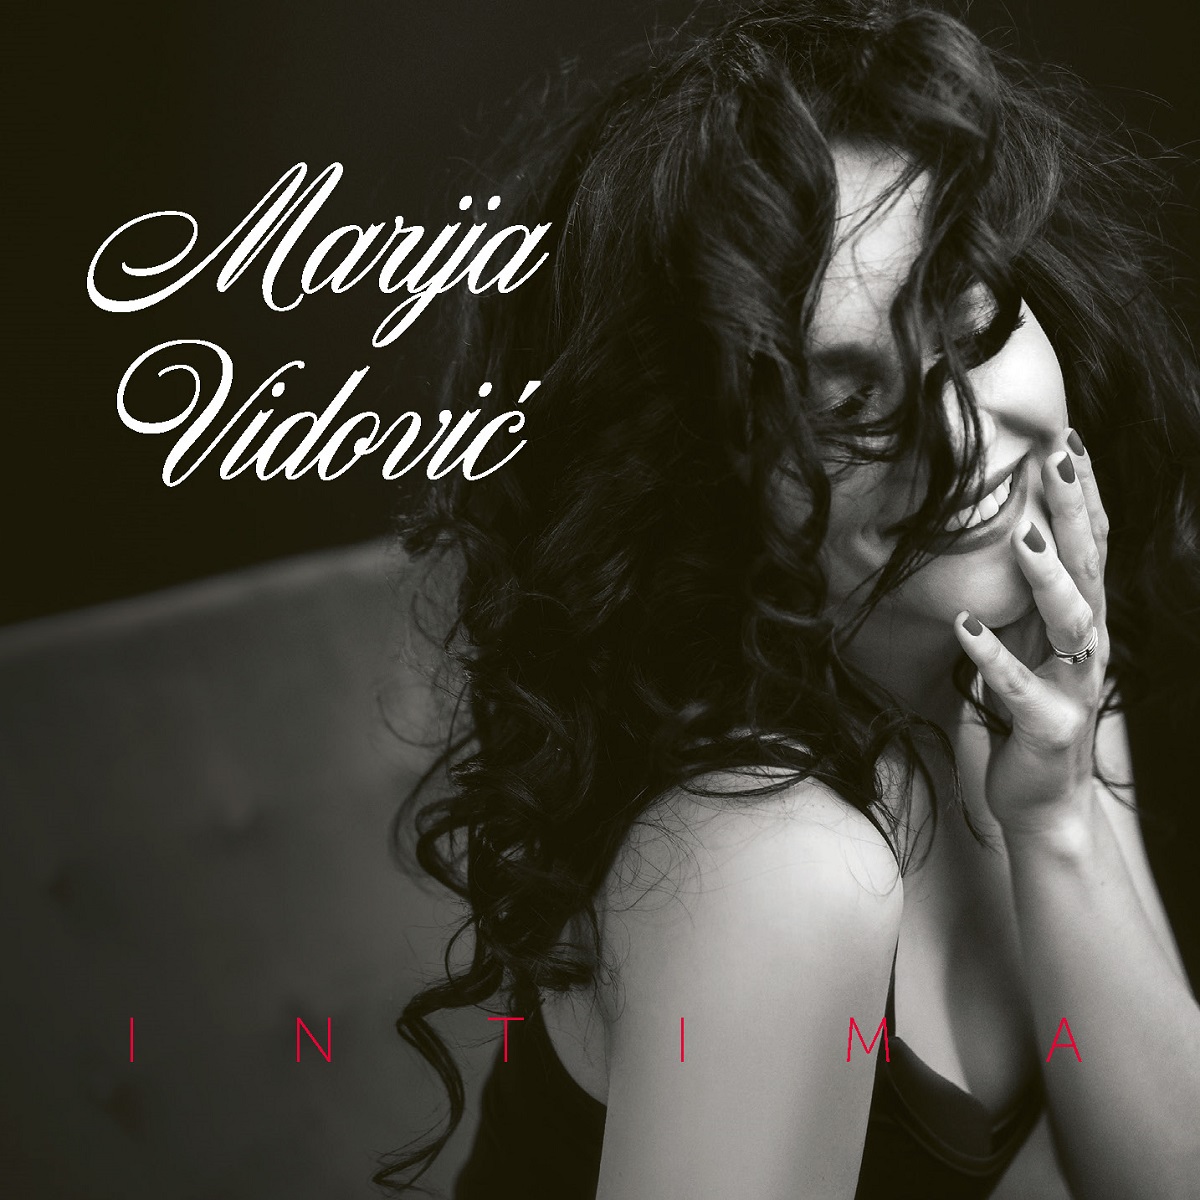 Objavljen album “Intima” sopranistice Marije Vidović